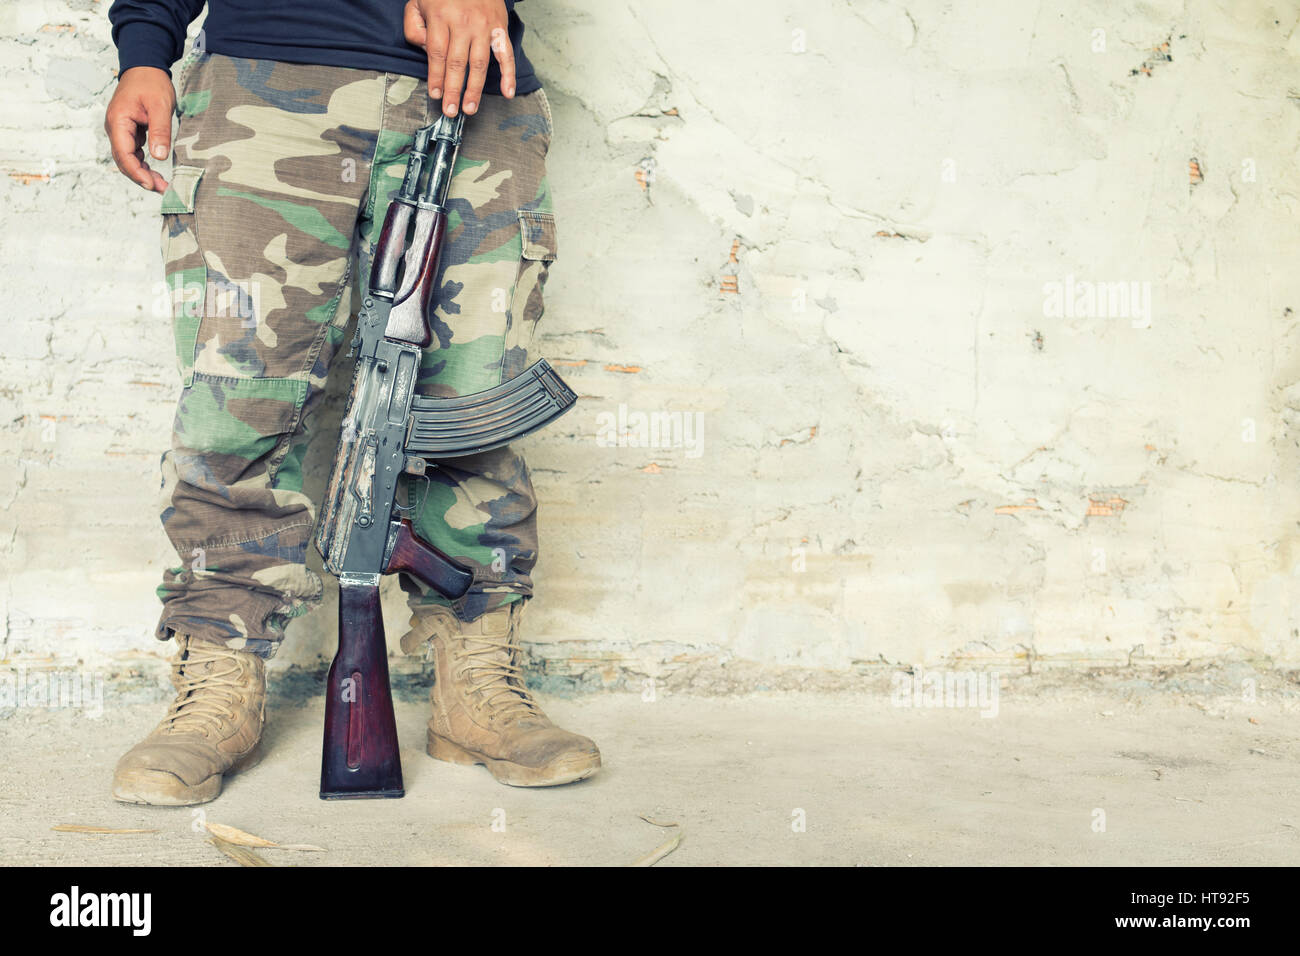 Attente de l'homme vieille kalashnikov mitraillette AK-47 Banque D'Images